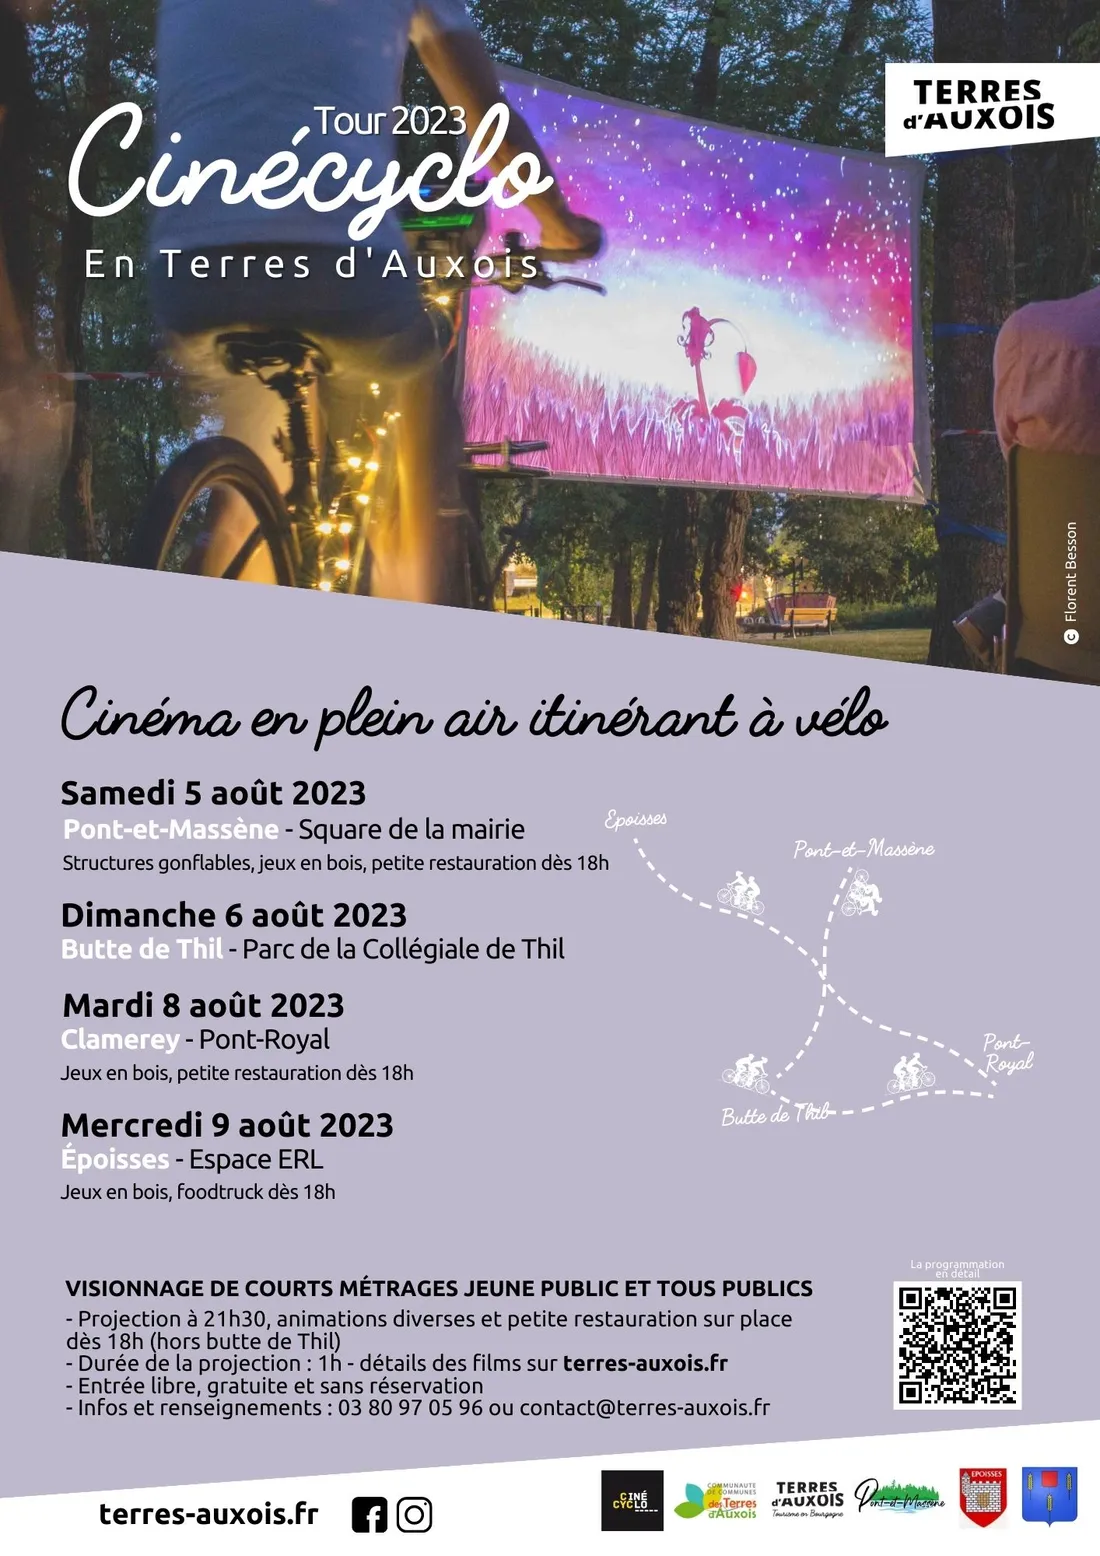 Le festival se déroule du 5 au 9 août en Terres d'Auxois. 